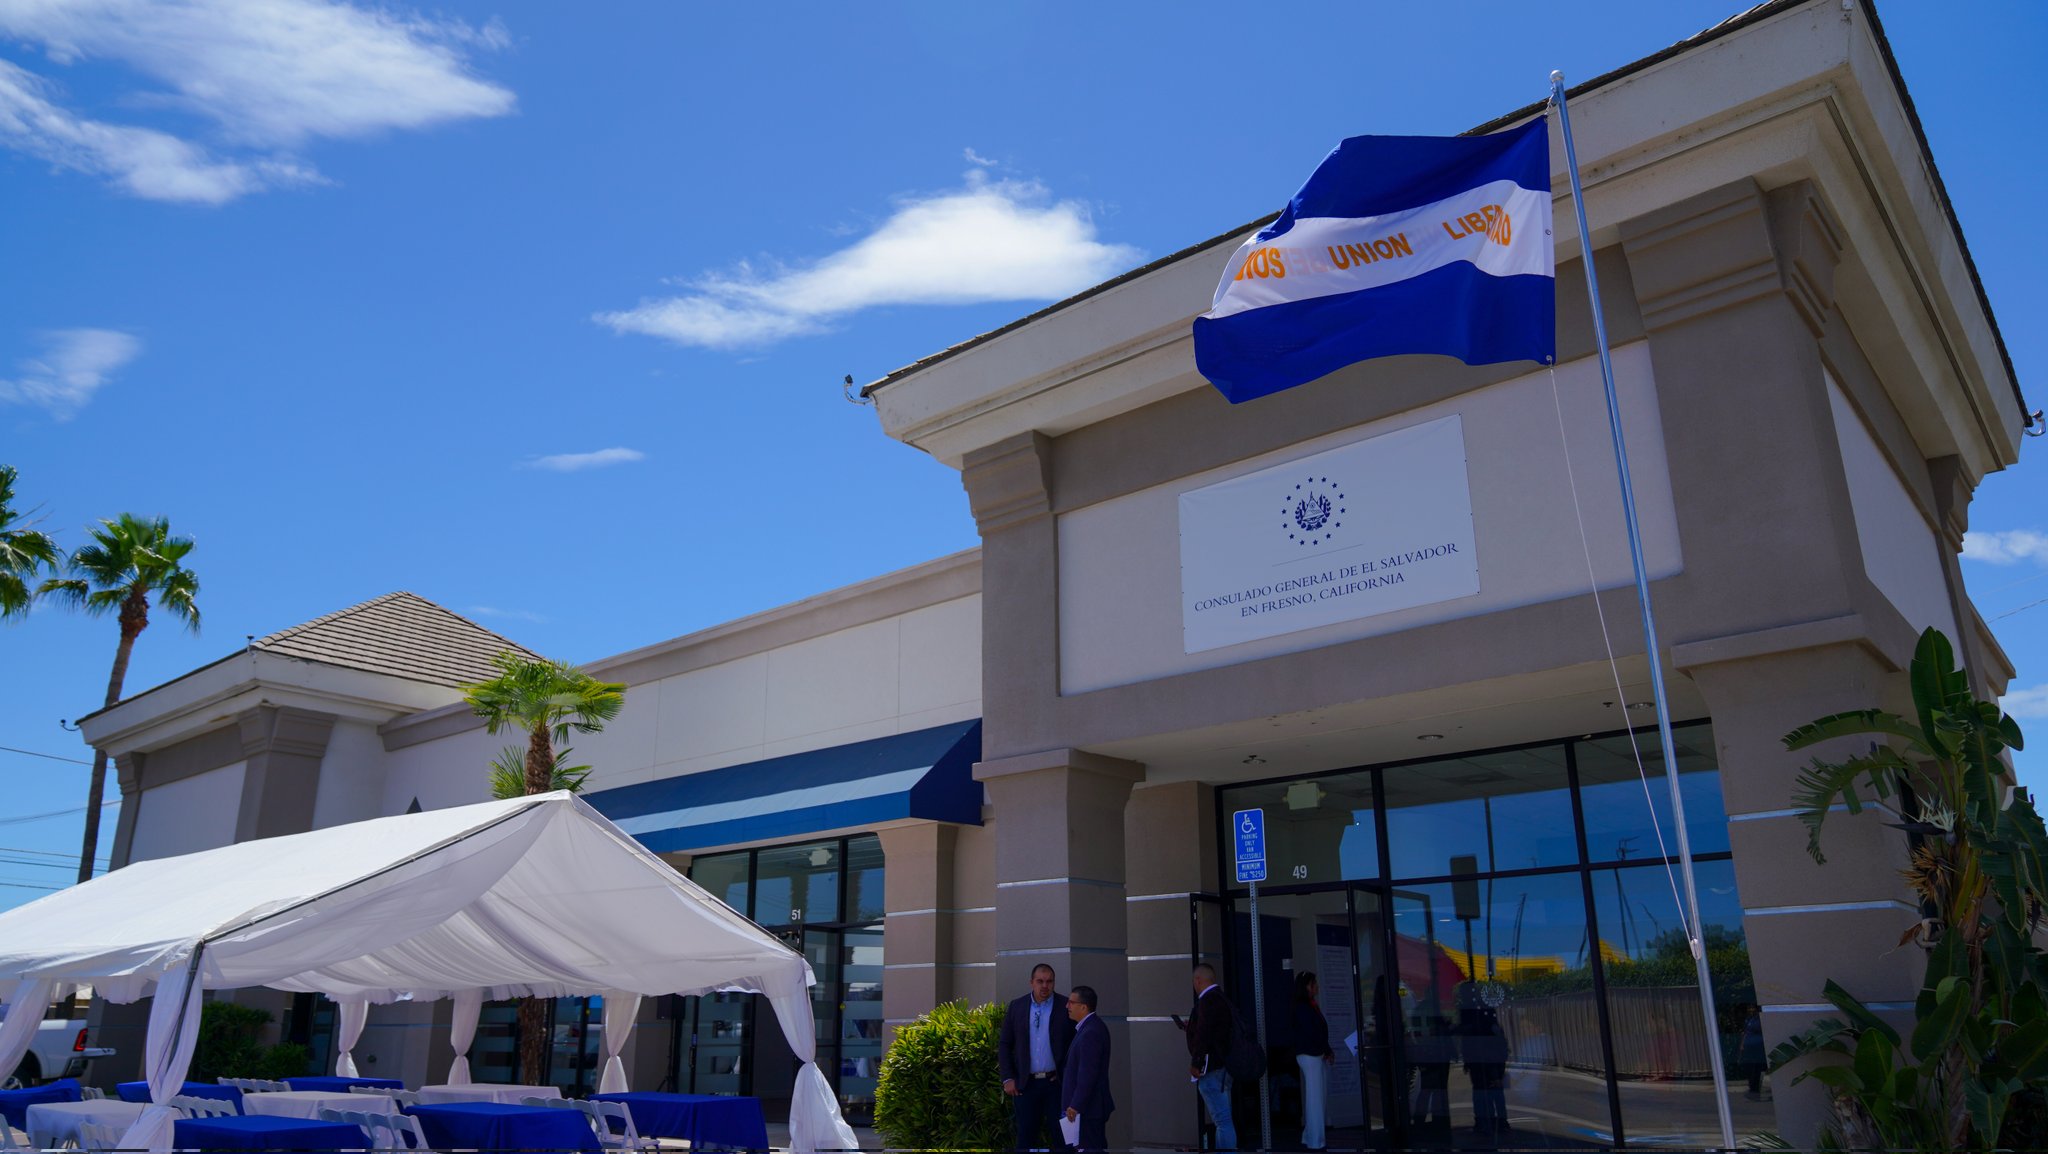 Cancillería inaugura los Consulados de El Salvador en Fresno y San Bernardino, California